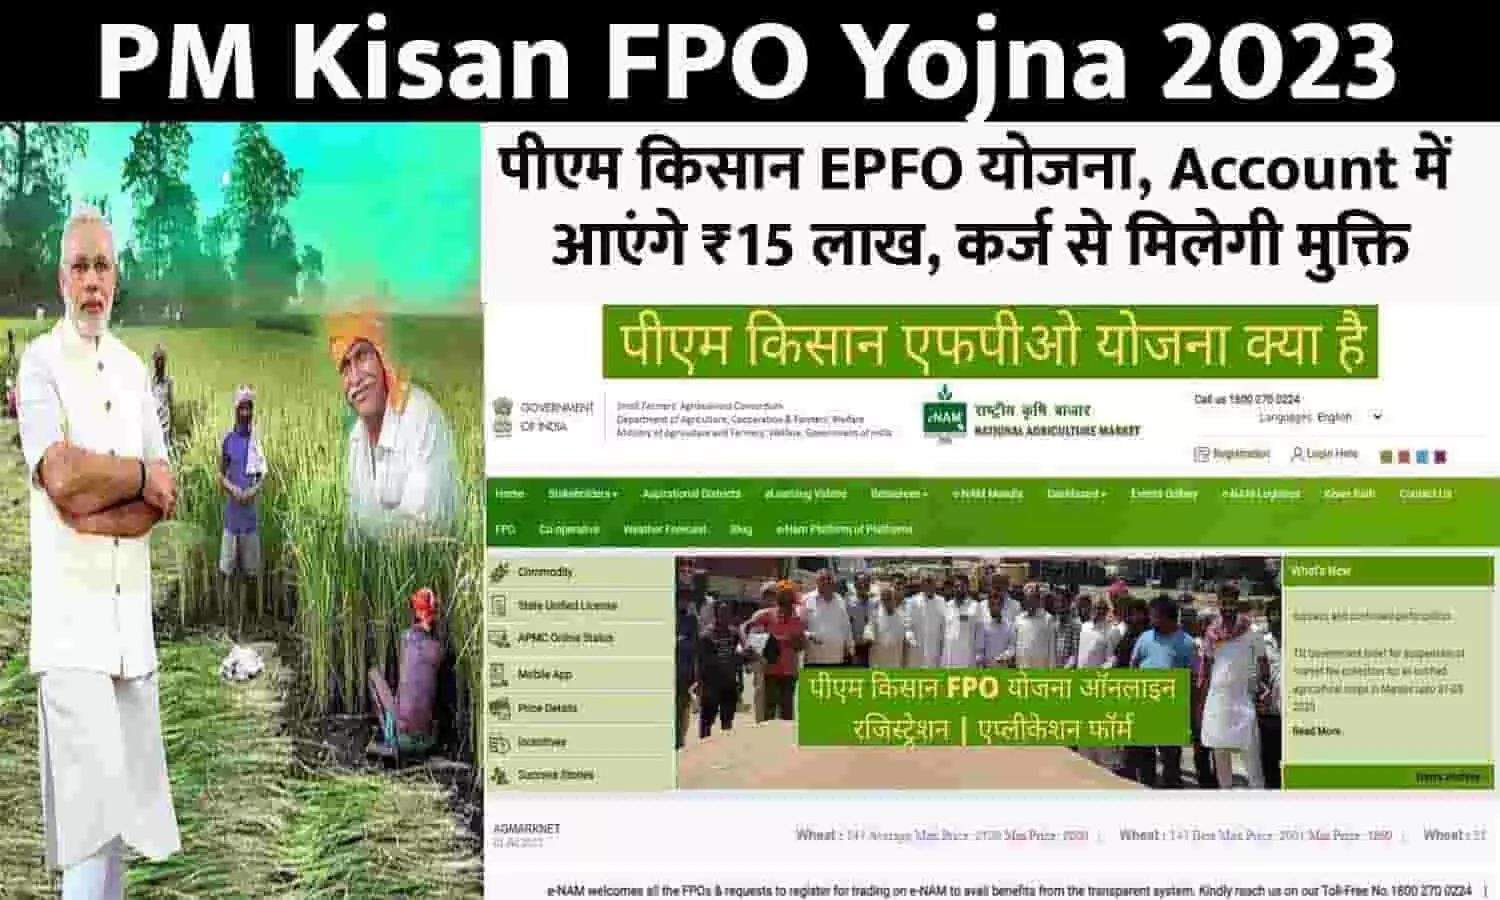 PM Kisan FPO Yojna Alert 2023: पीएम किसान EPFO योजना, Account में आएंगे ₹15 लाख, कर्ज से मिलेगी मुक्ति